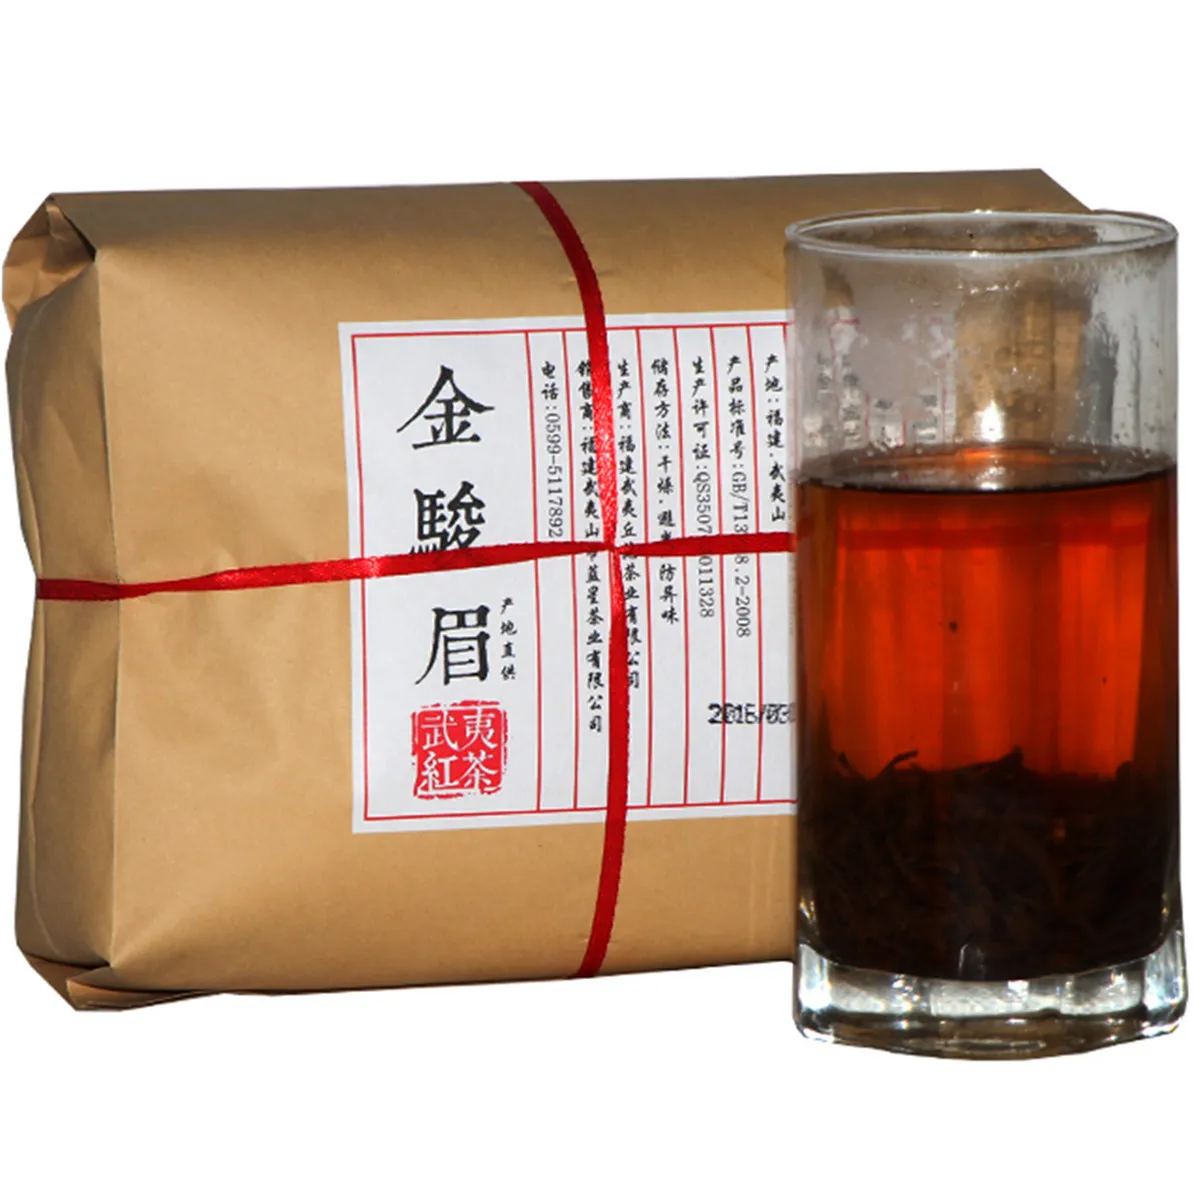 500g Chinese Organic Black Tea Kim Chun Mei Jinjunmei Red Tea Health Care New Cooked tae Green Food